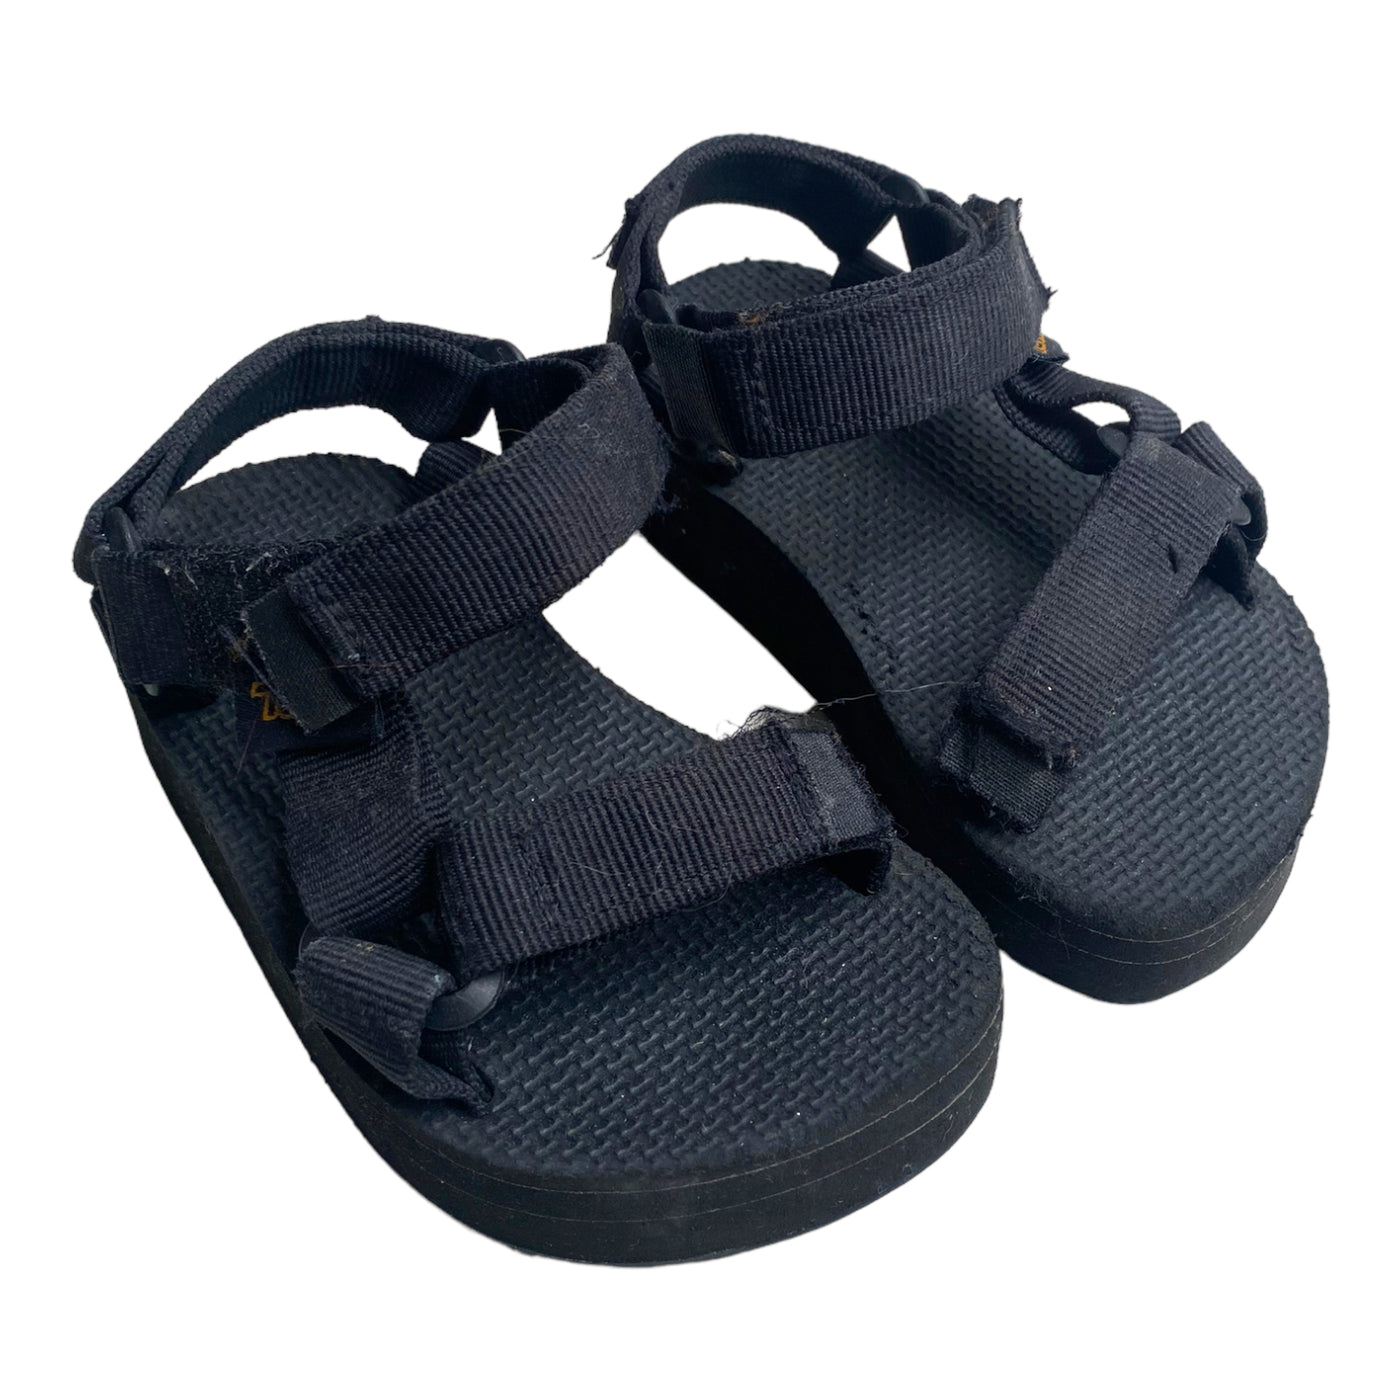 Teva sandals platform black size 24